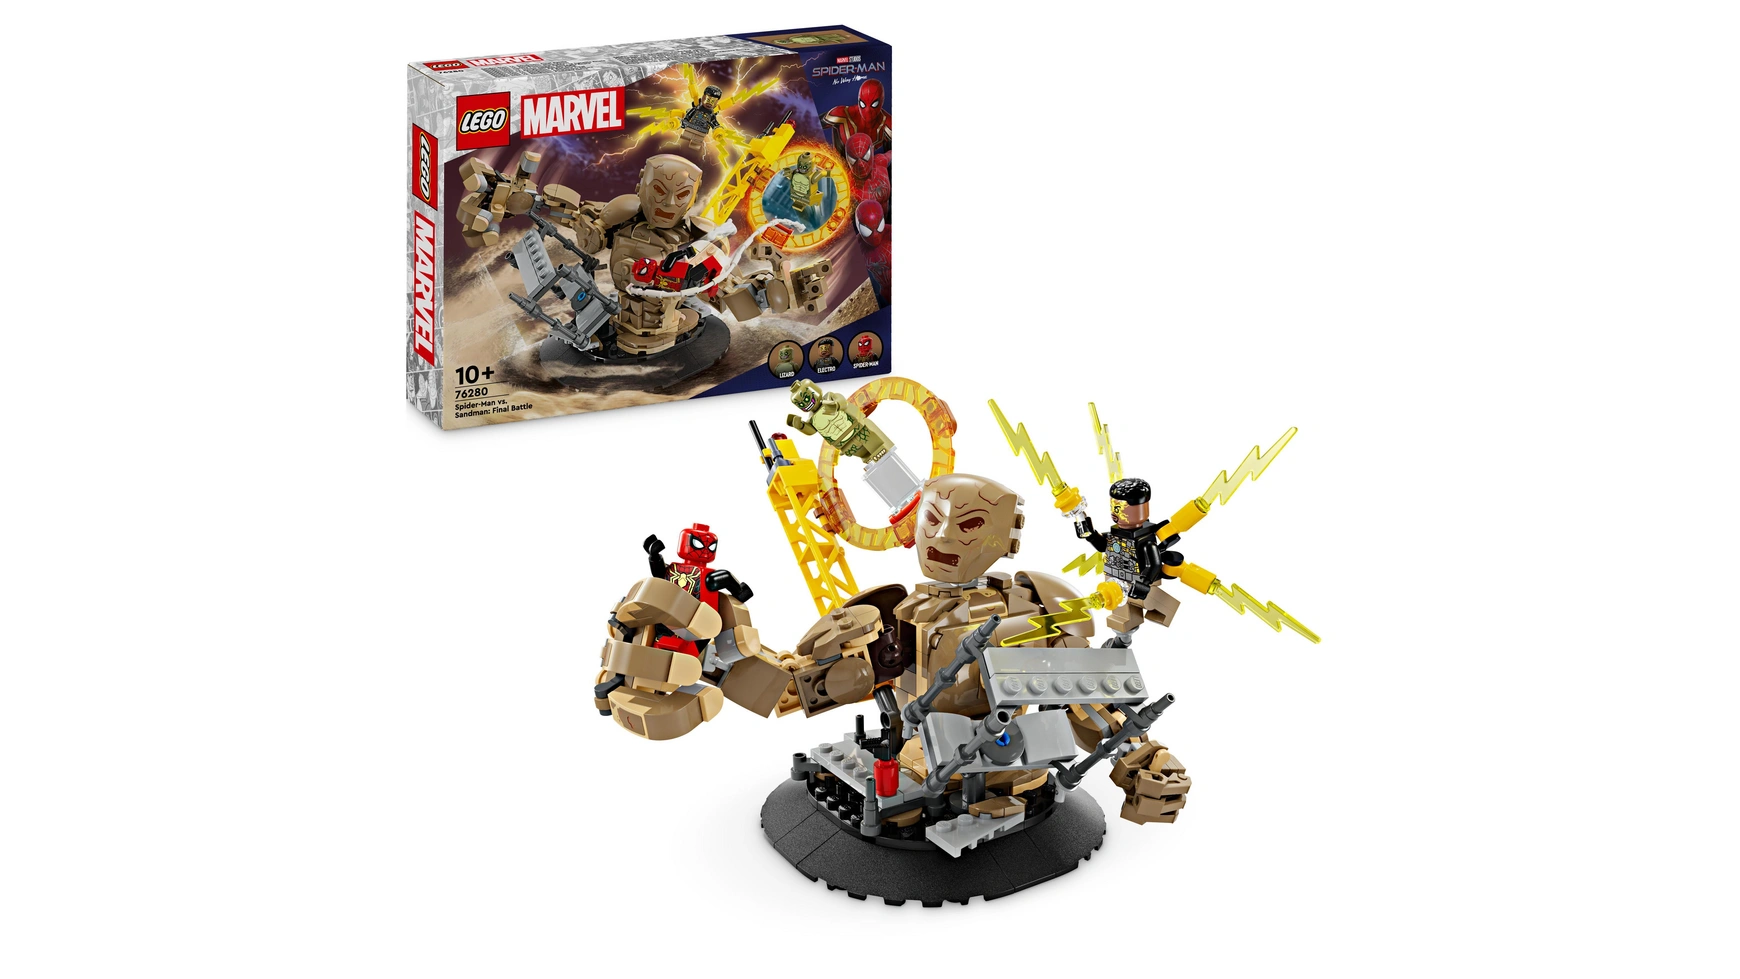 Lego Marvel Человек-паук против Песочного человека: Разборки, игрушка-супергерой набор hollywood rides marvel spider man